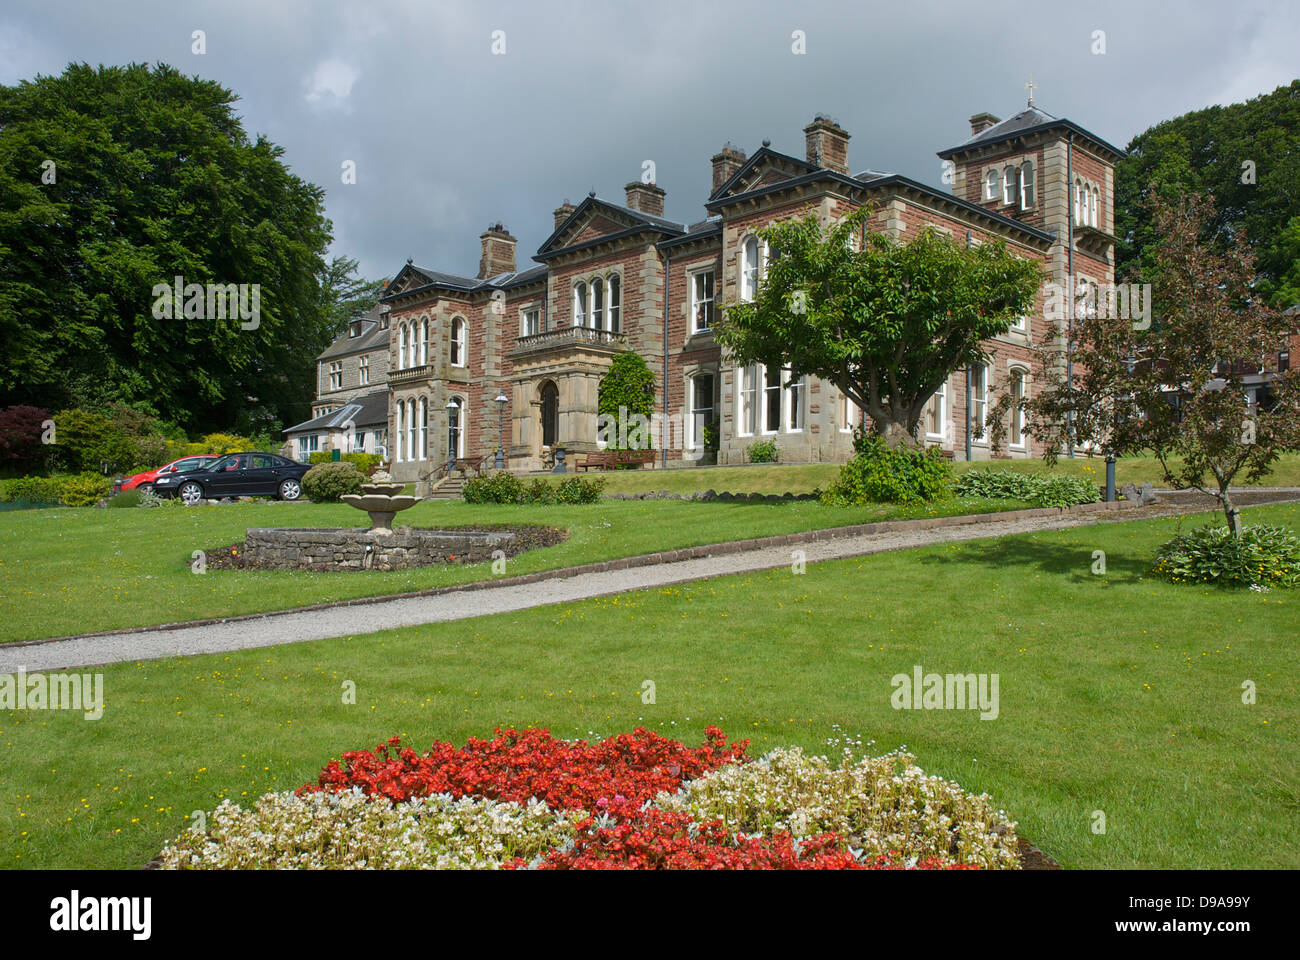 Boarbank Hall Nursing Home, Allithwaite, Grange-over-Sands, South Lakeland, Cumbria, England UK Stock Photo